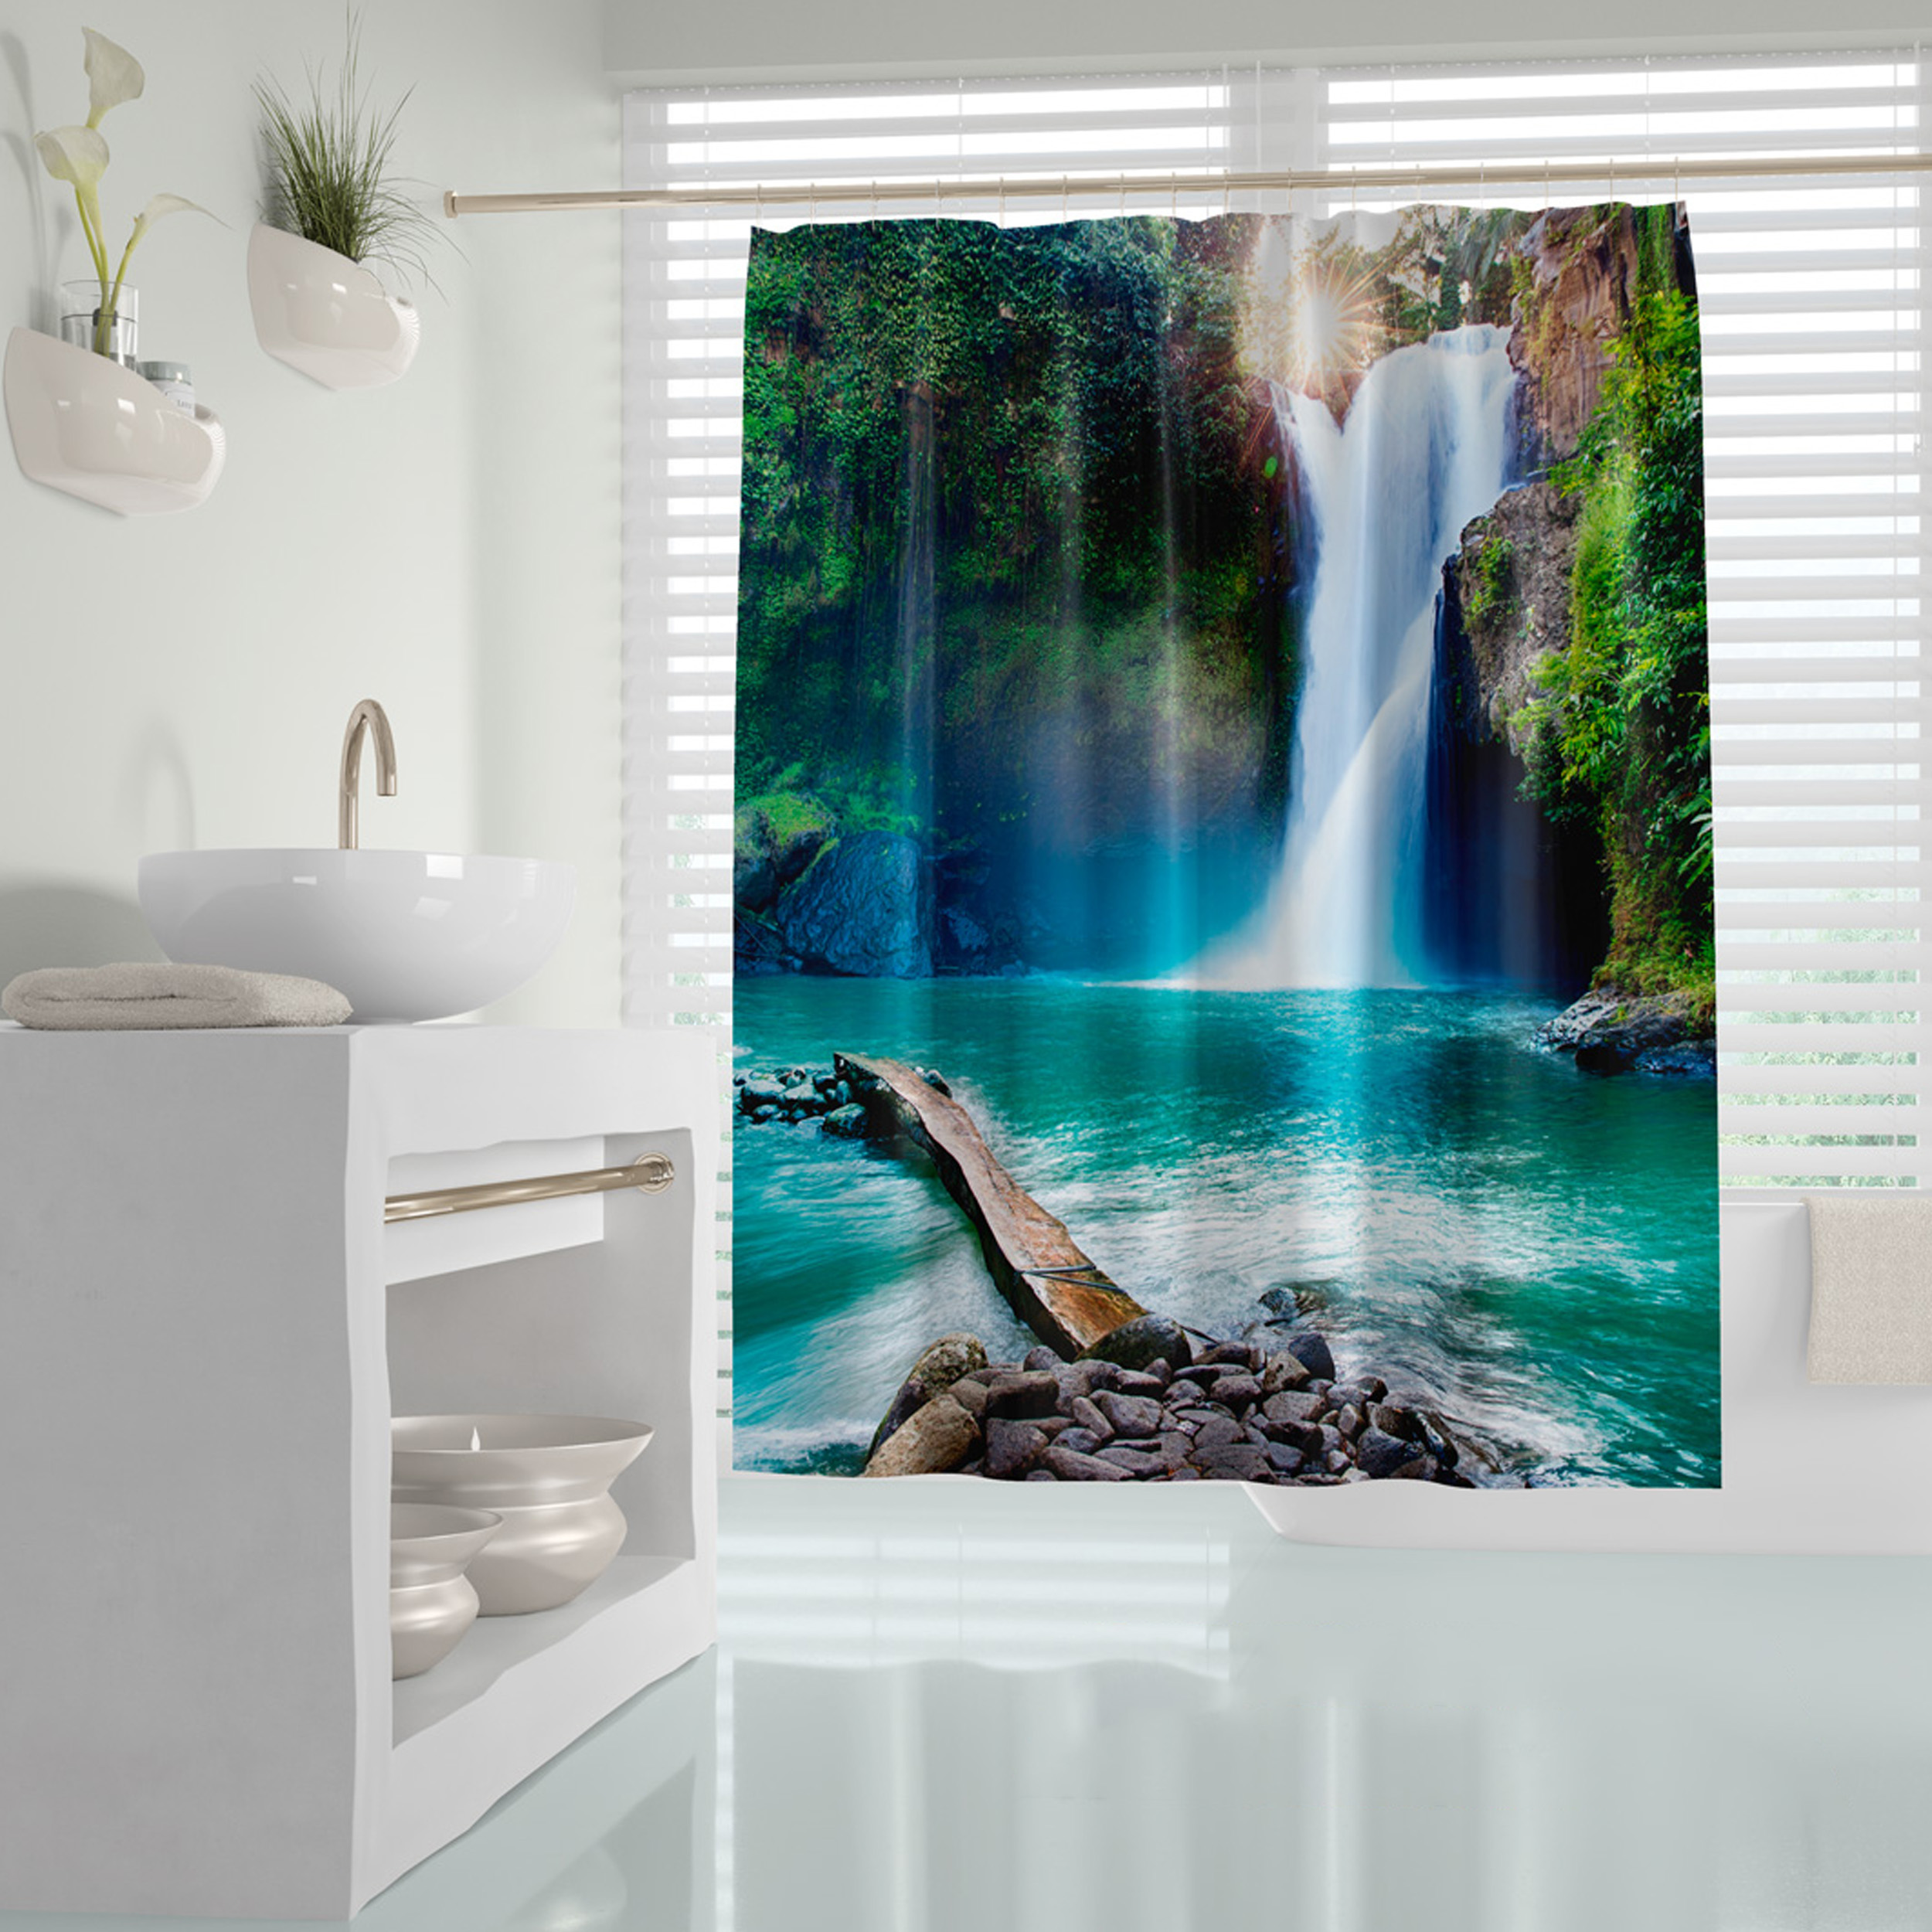 پرده حمام دلفین مدل Waterfall سایز 180x200 سانتی متر